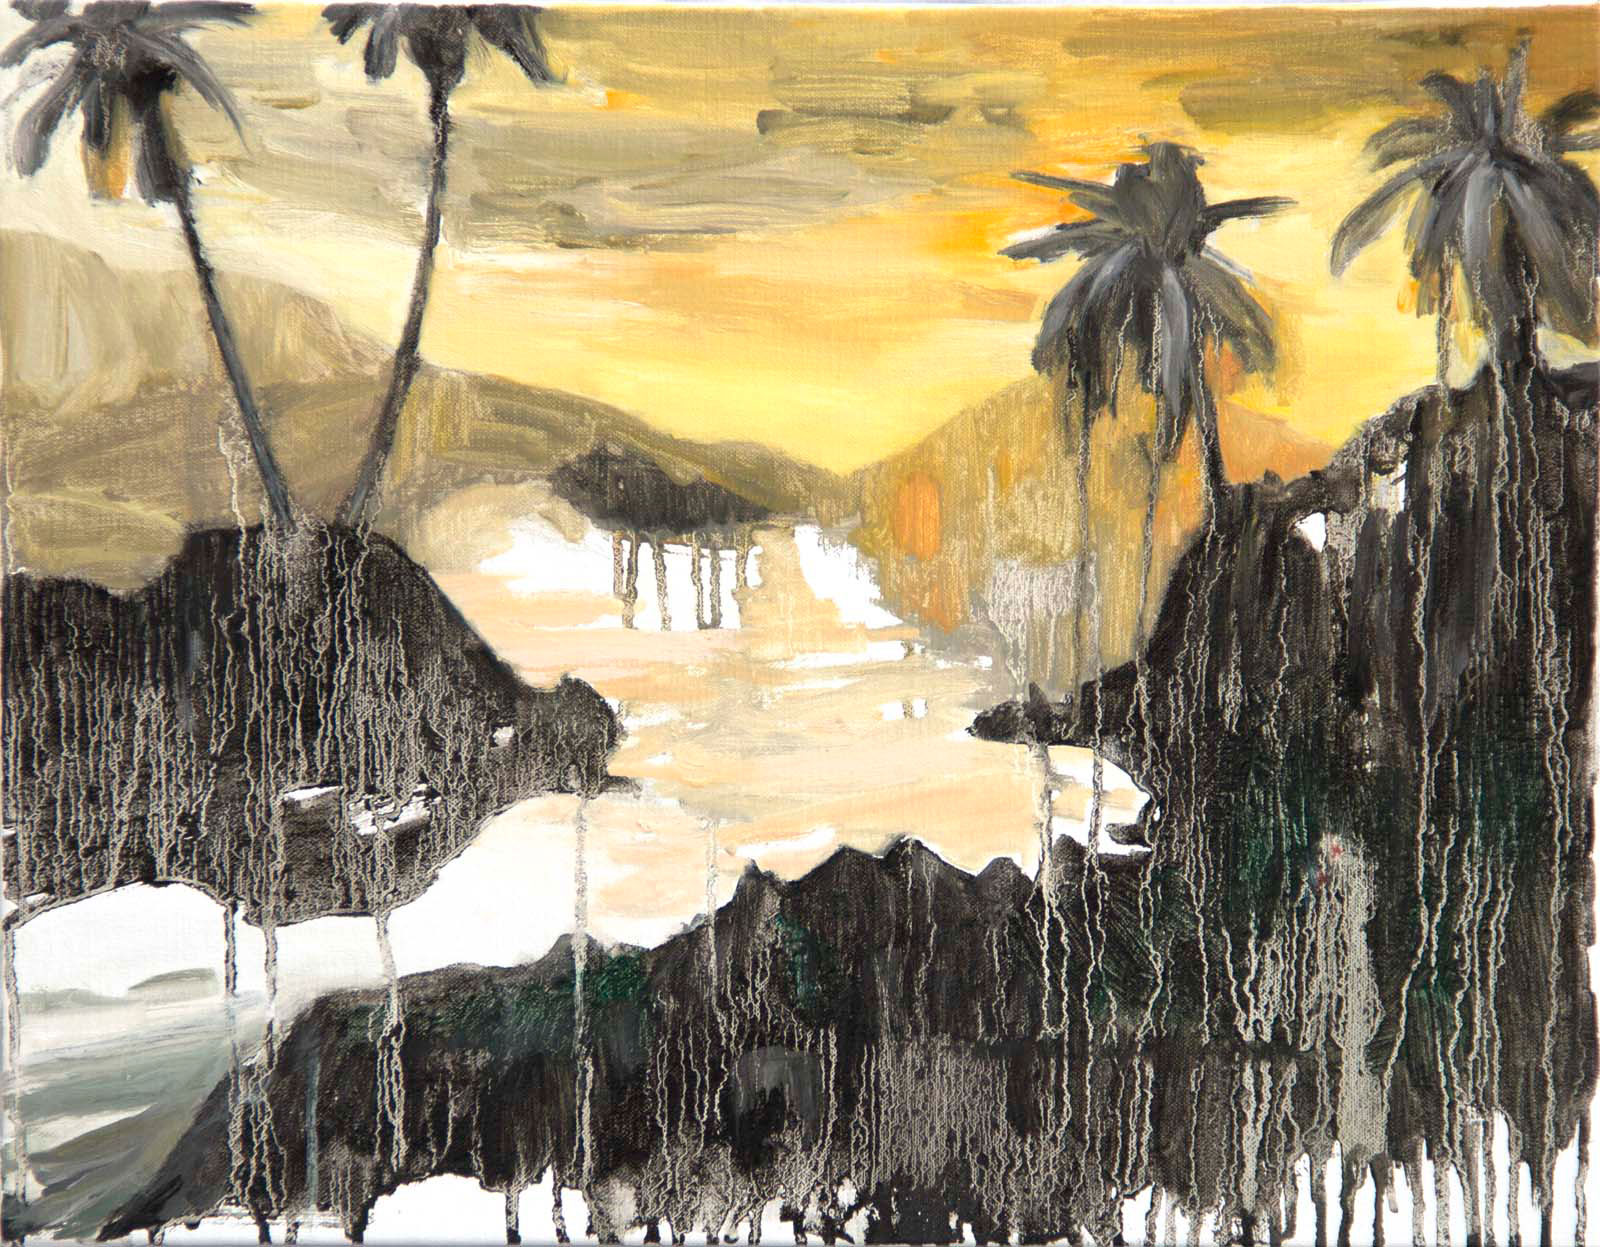 Johanna Fjaestad, "Tropical", 2016, oil on canvas, 36 x 45 cm